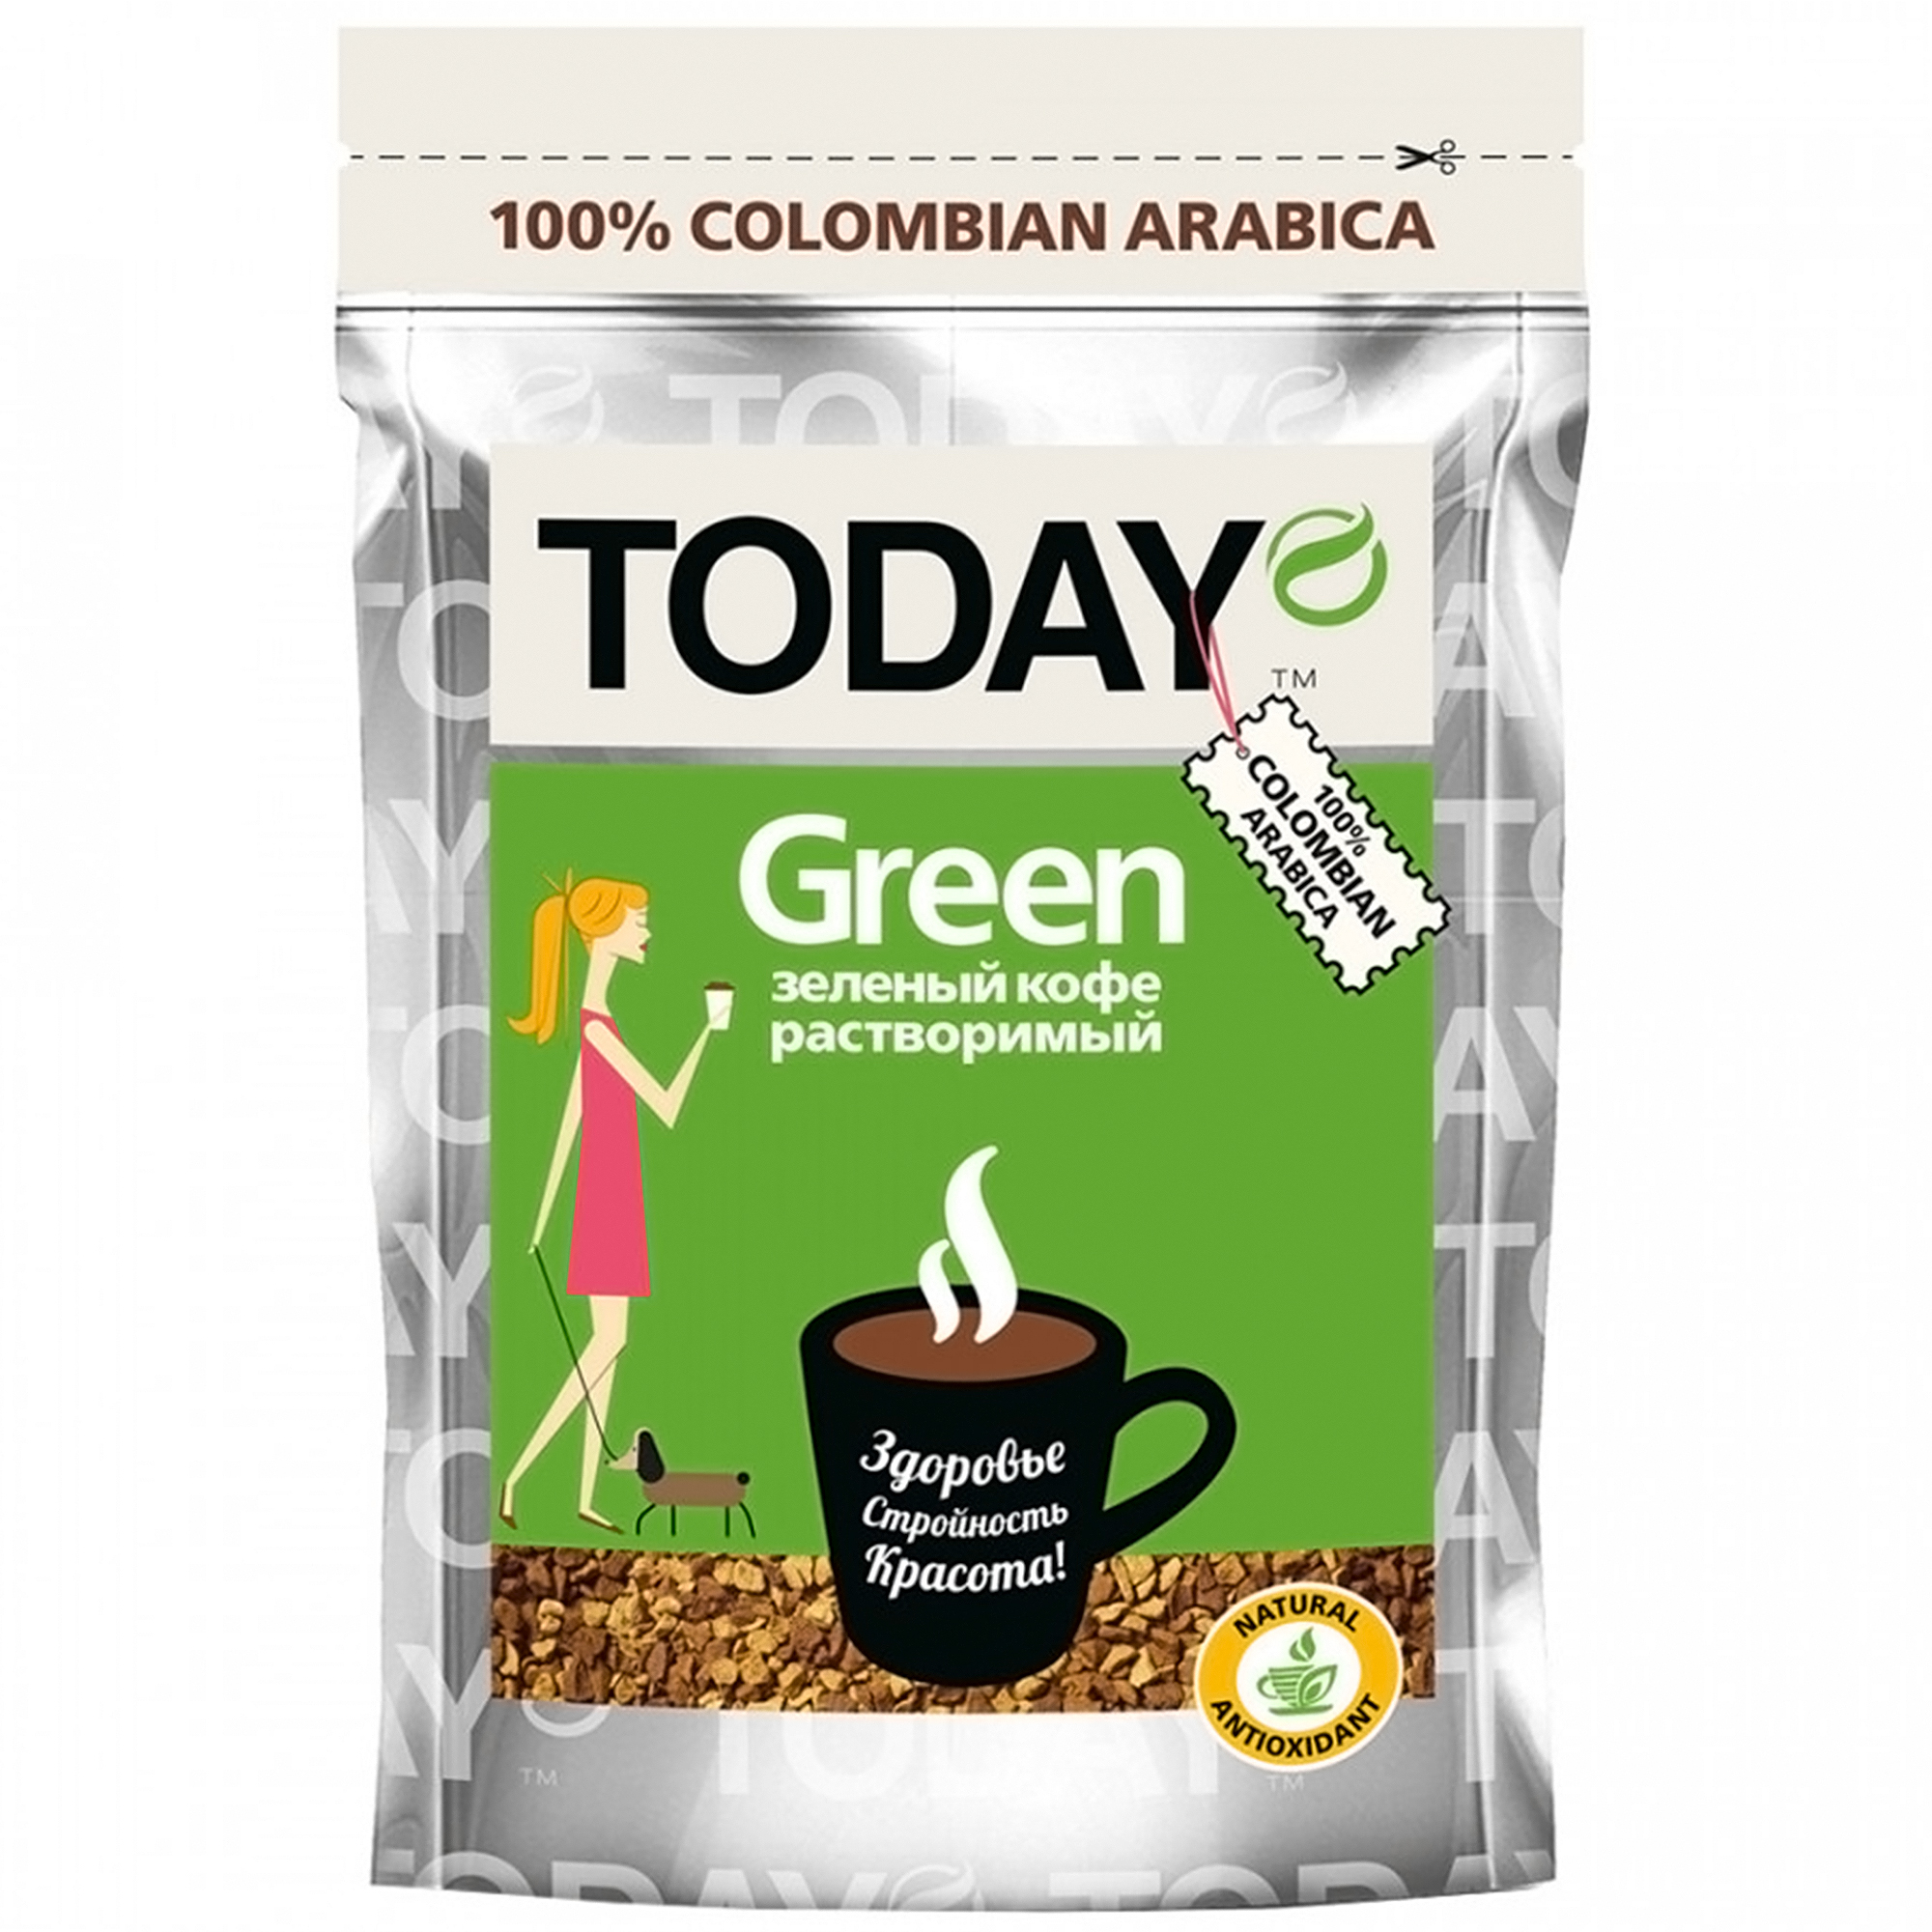 Кофе Today Green растворимый сублимированный, 75 г кофе растворимый today espresso сублимированный 75 г